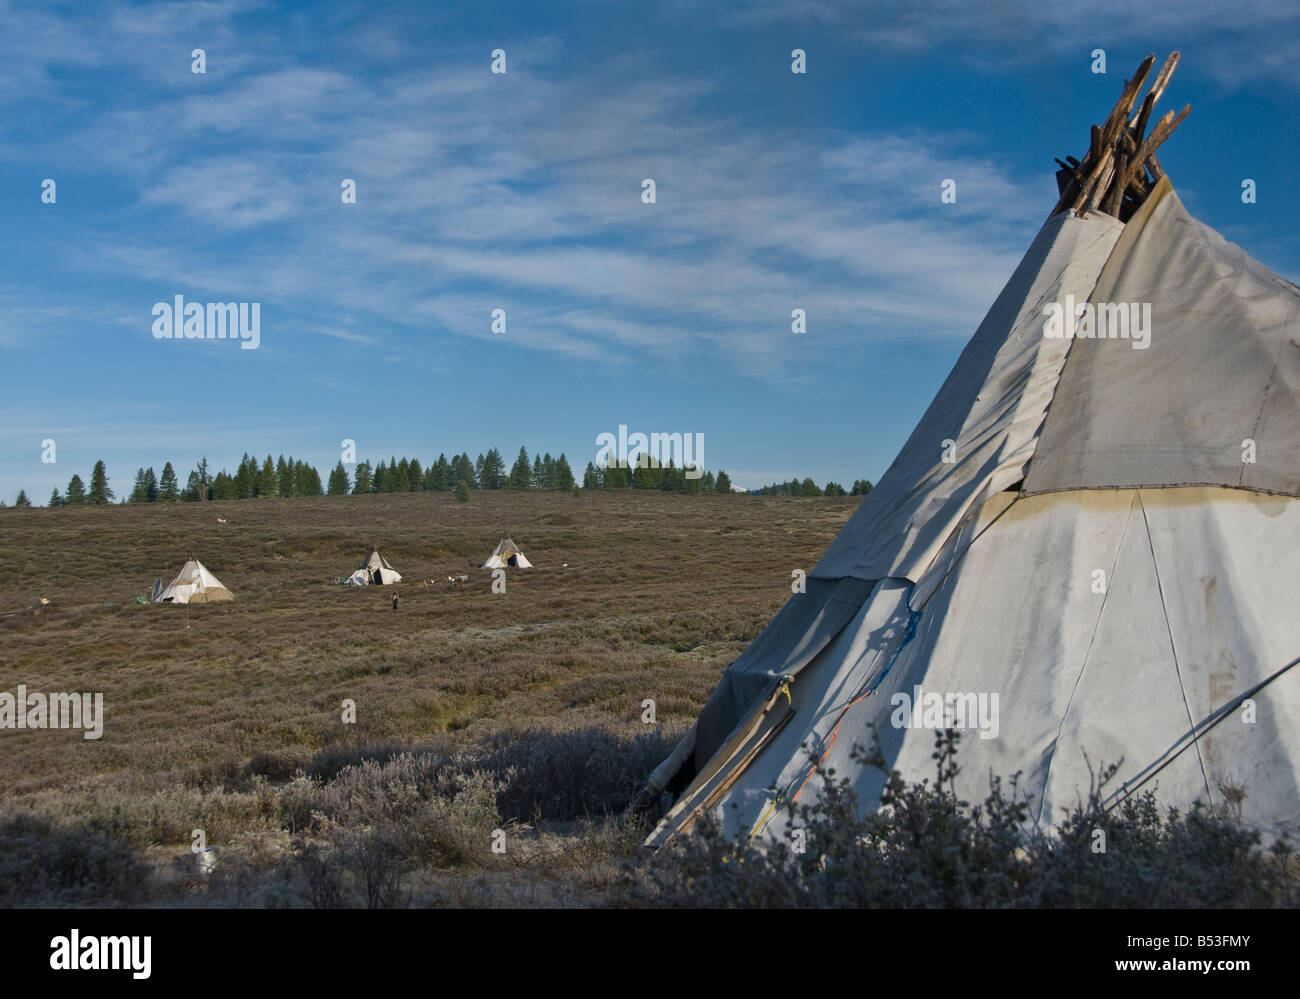 Tsaatan Tepee encampment Northern Mongolia Stock Photo